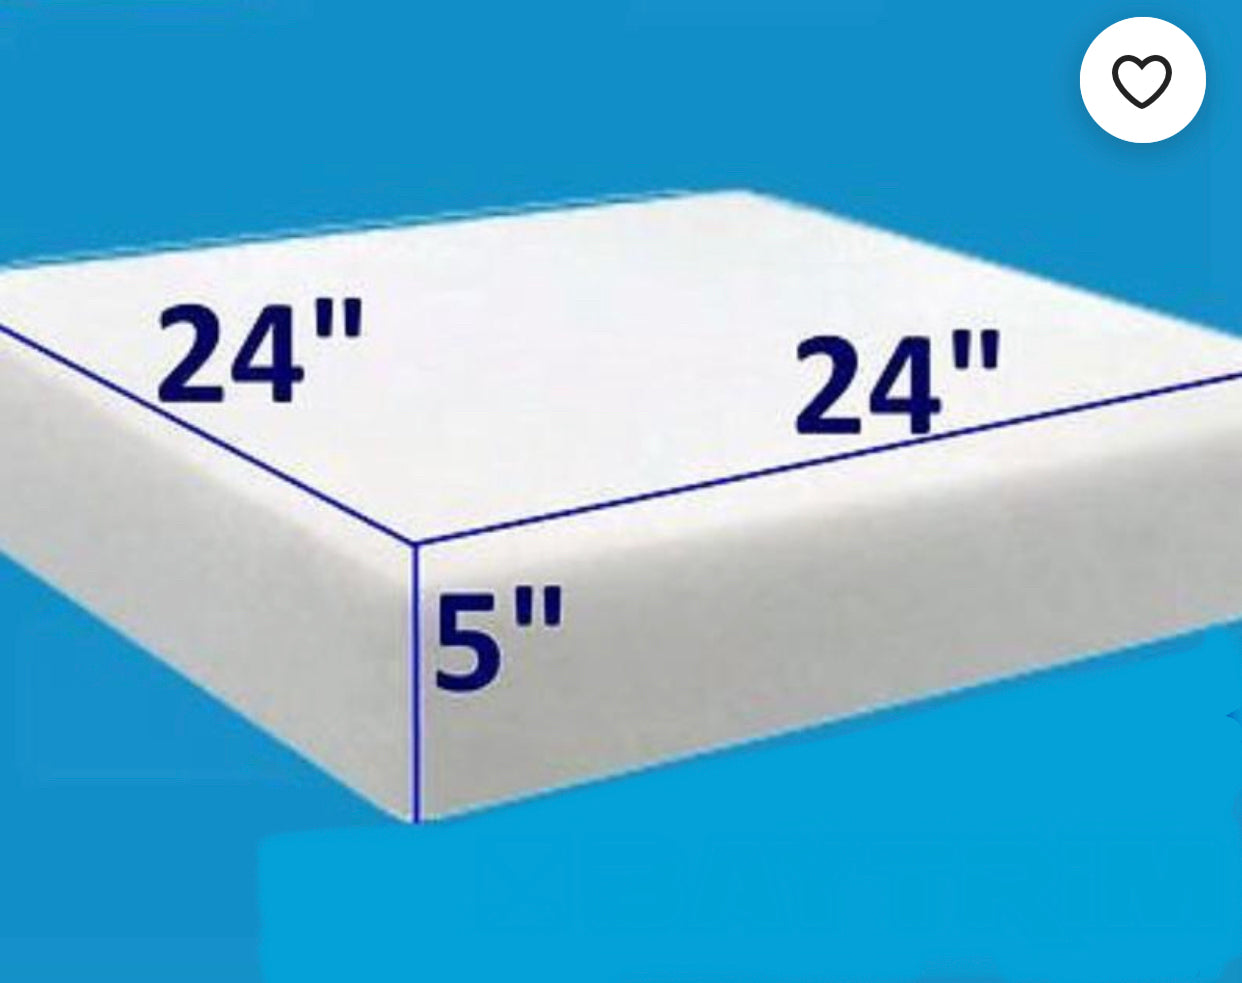 1844FR Medium Firm High Density Cushion Foam (1-2 Sheets)